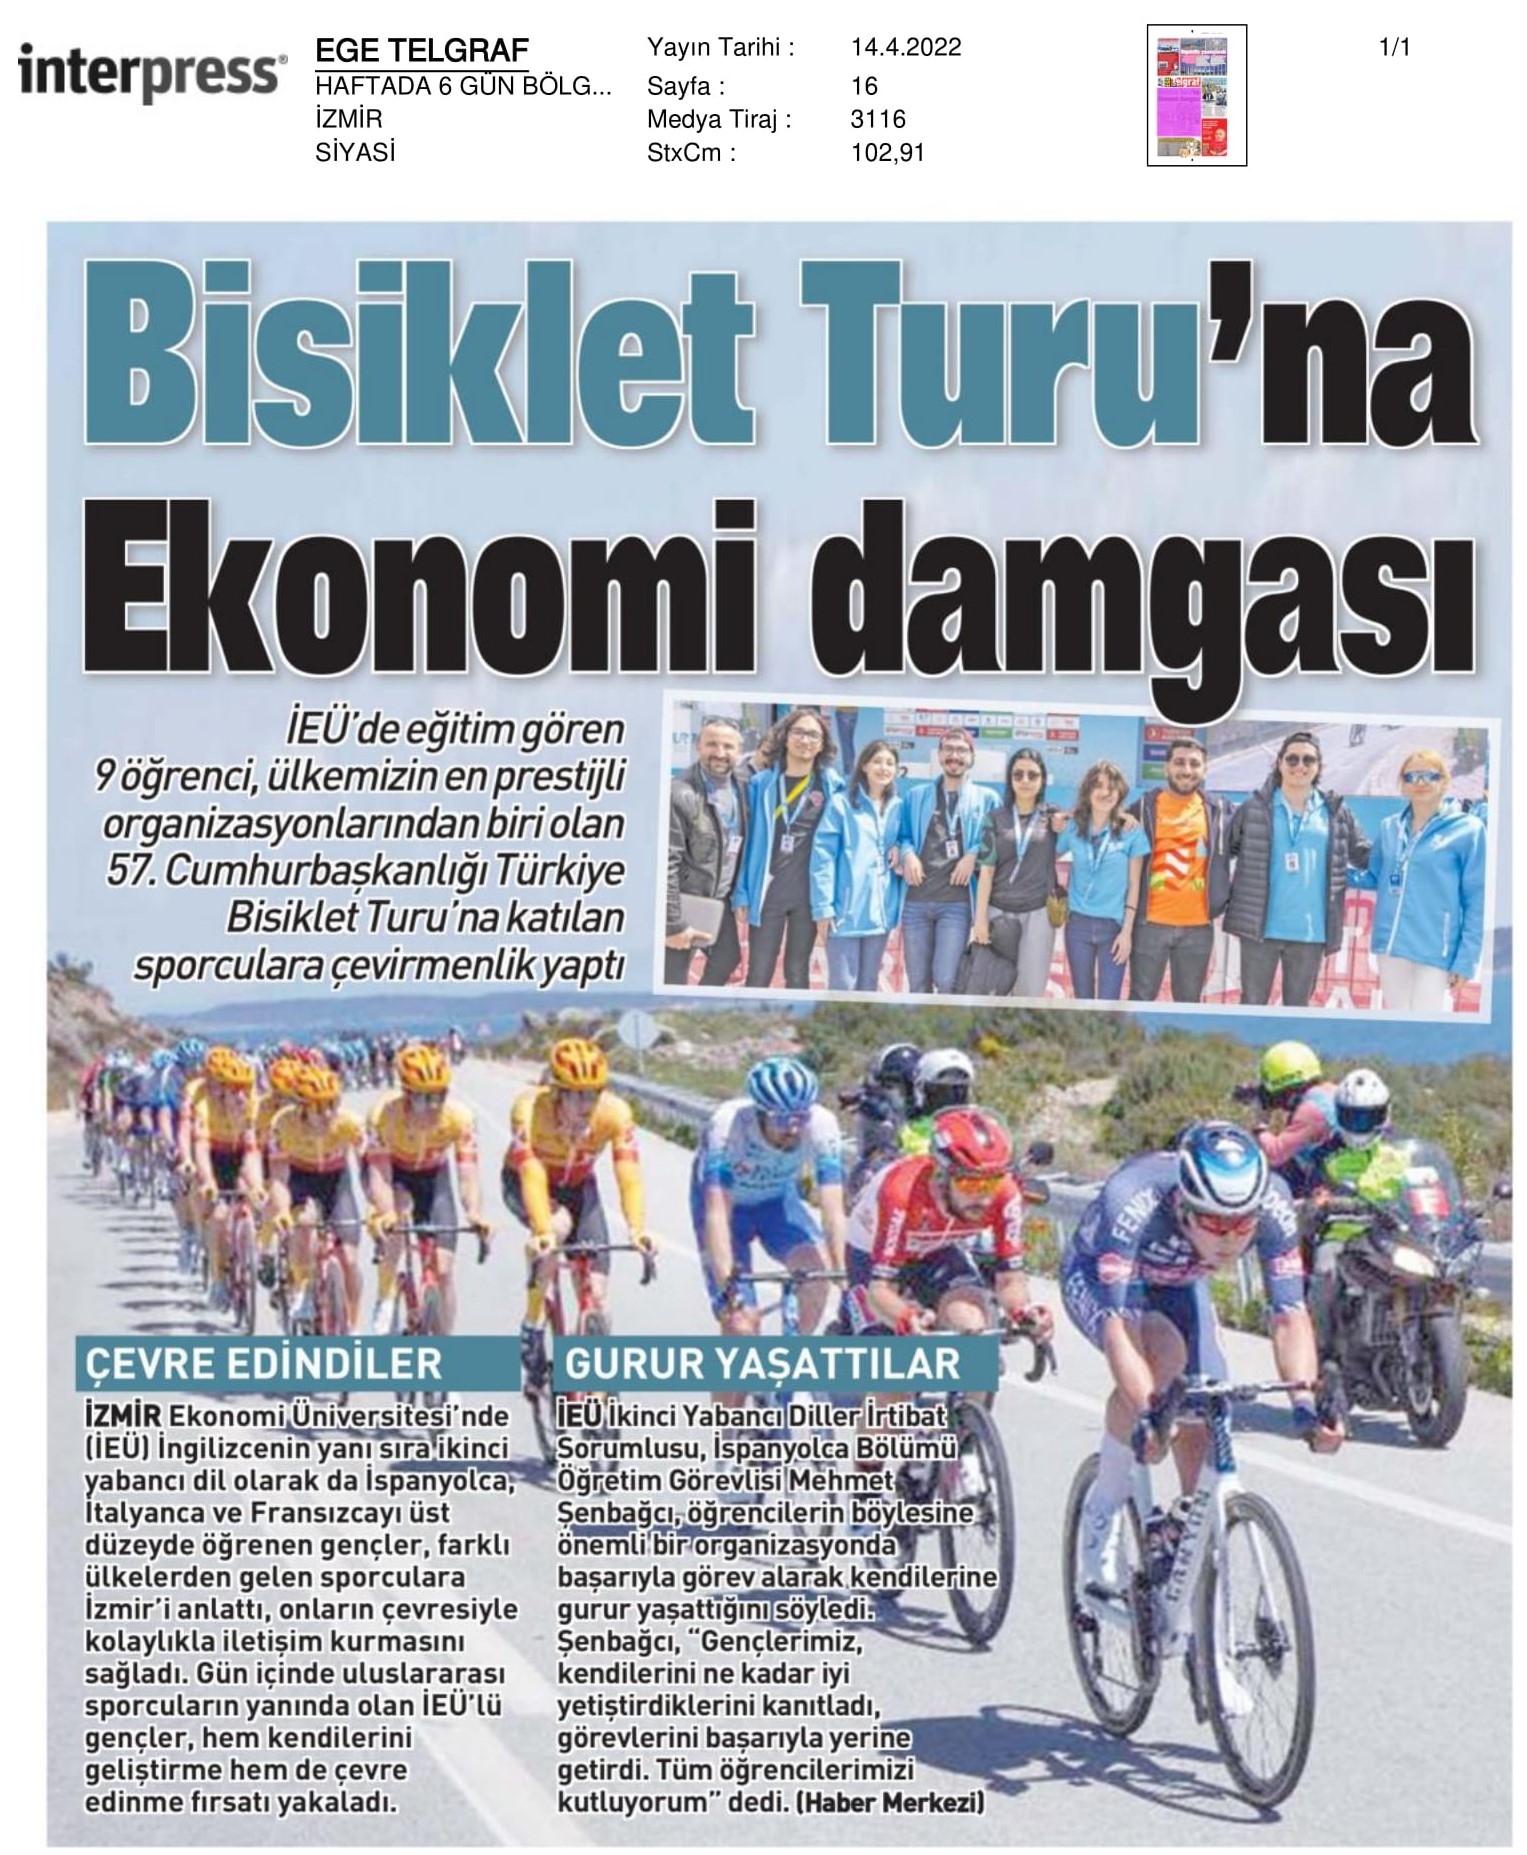 Bisiklet Turu’nda ‘İzmir Ekonomi’ gururu